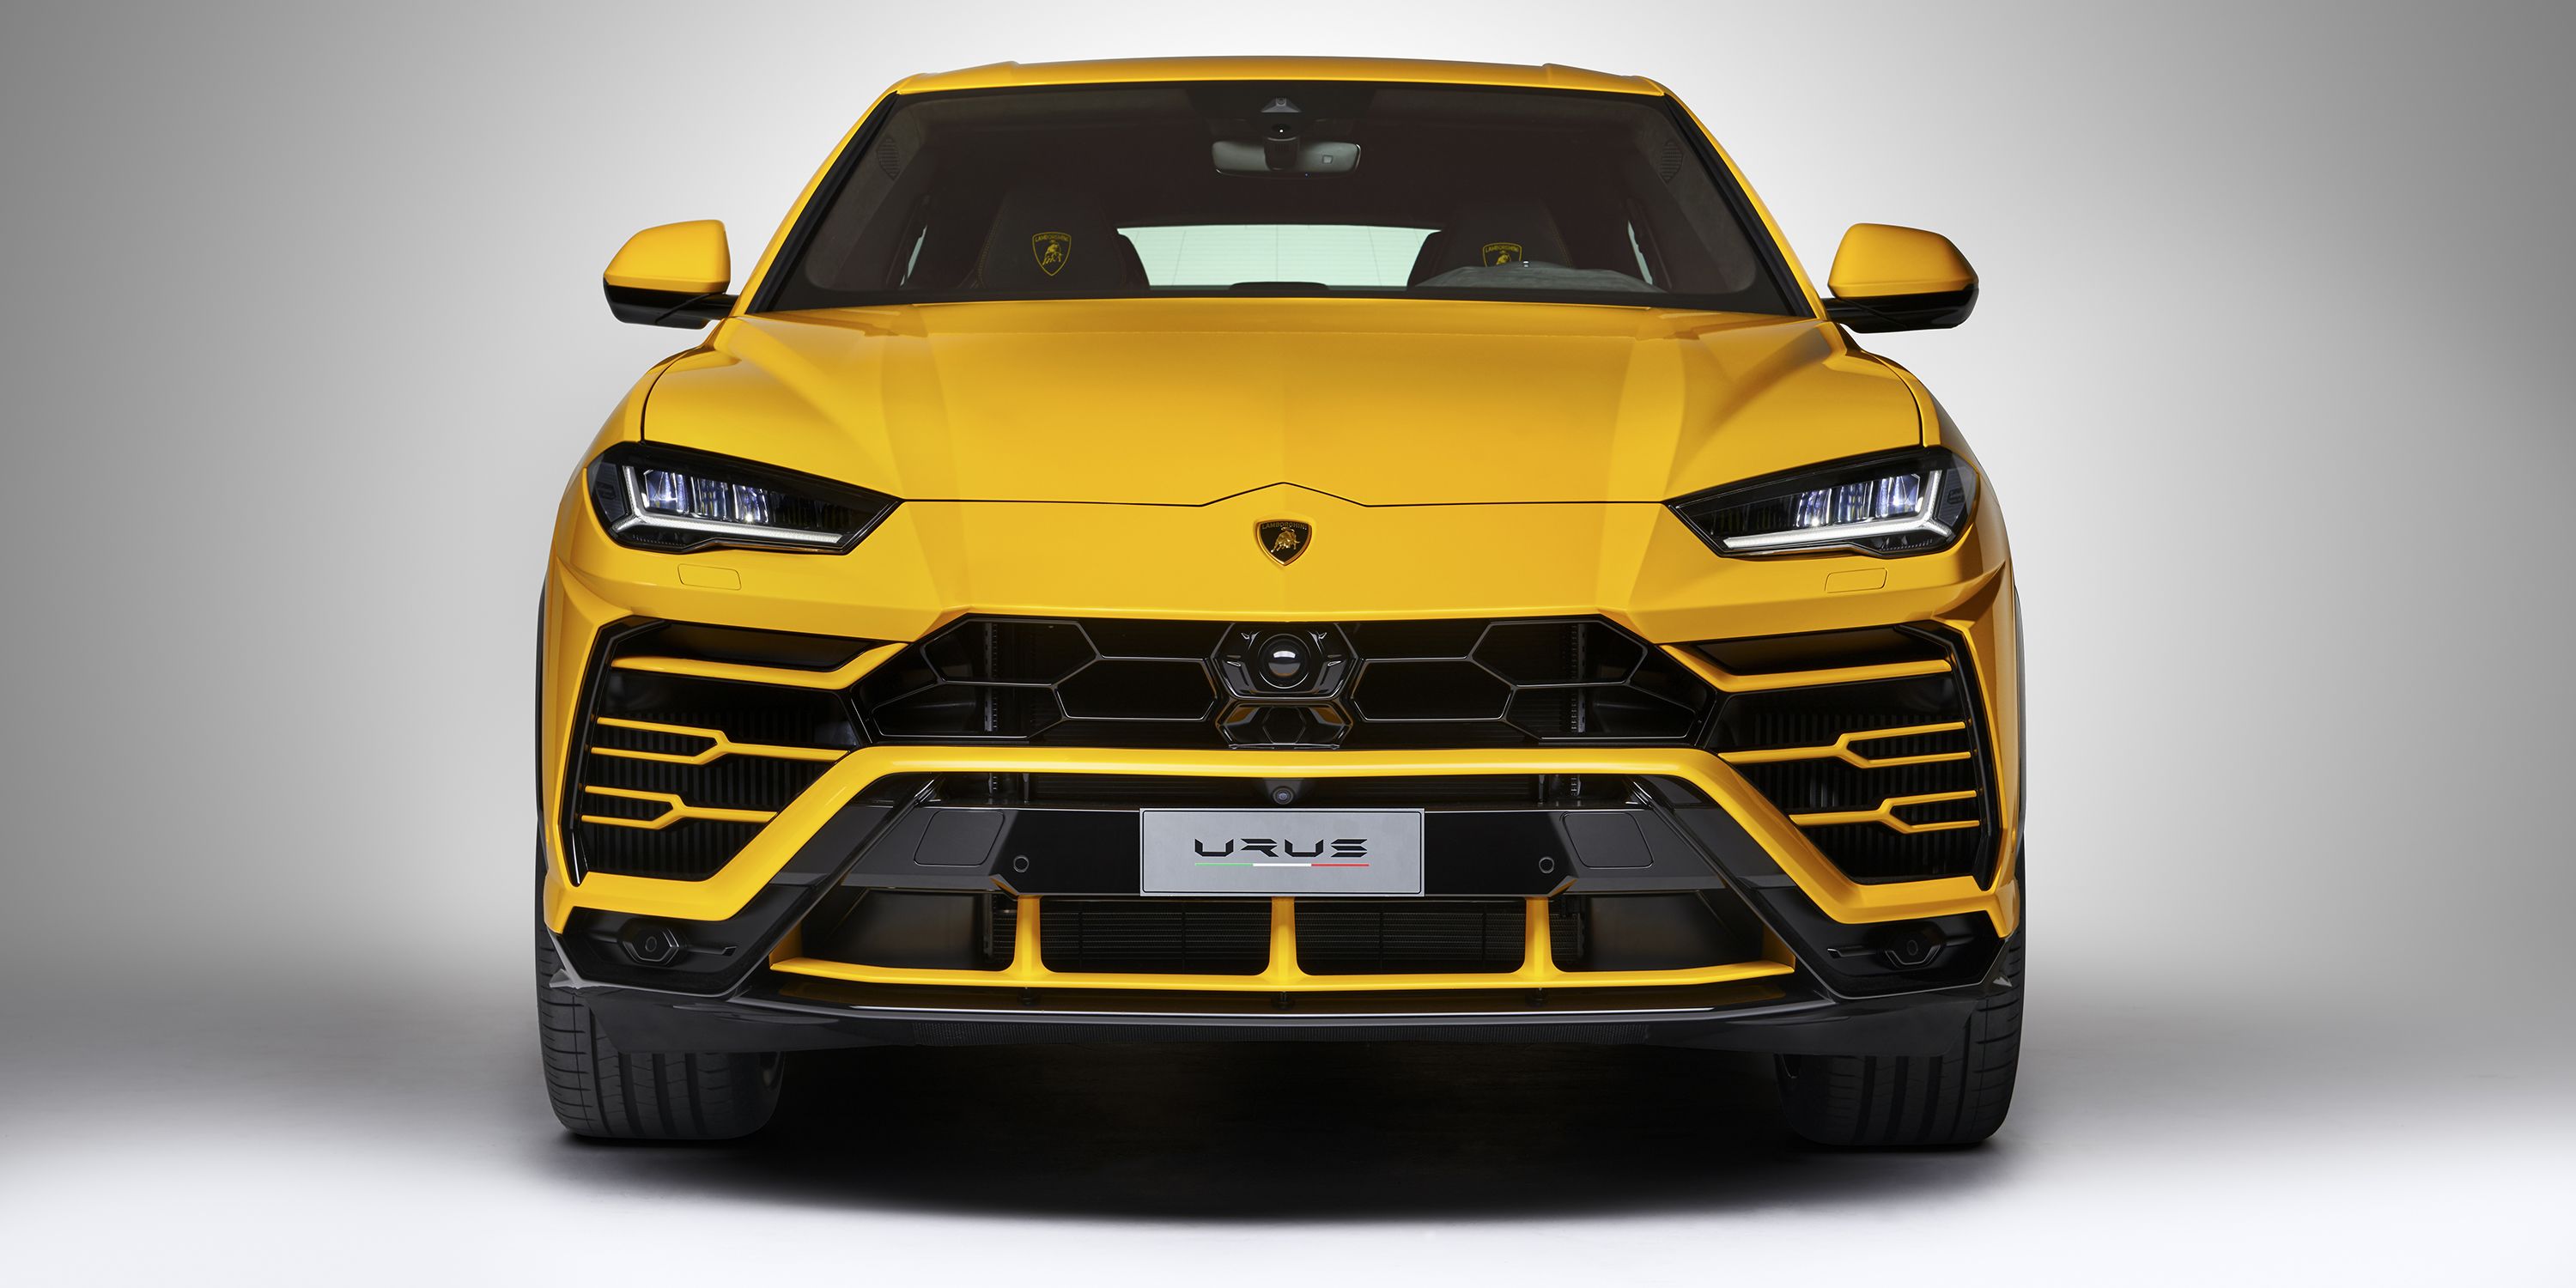 2019 Lamborghini Urus SUV Revealed - New Urus Official Specs & Photos